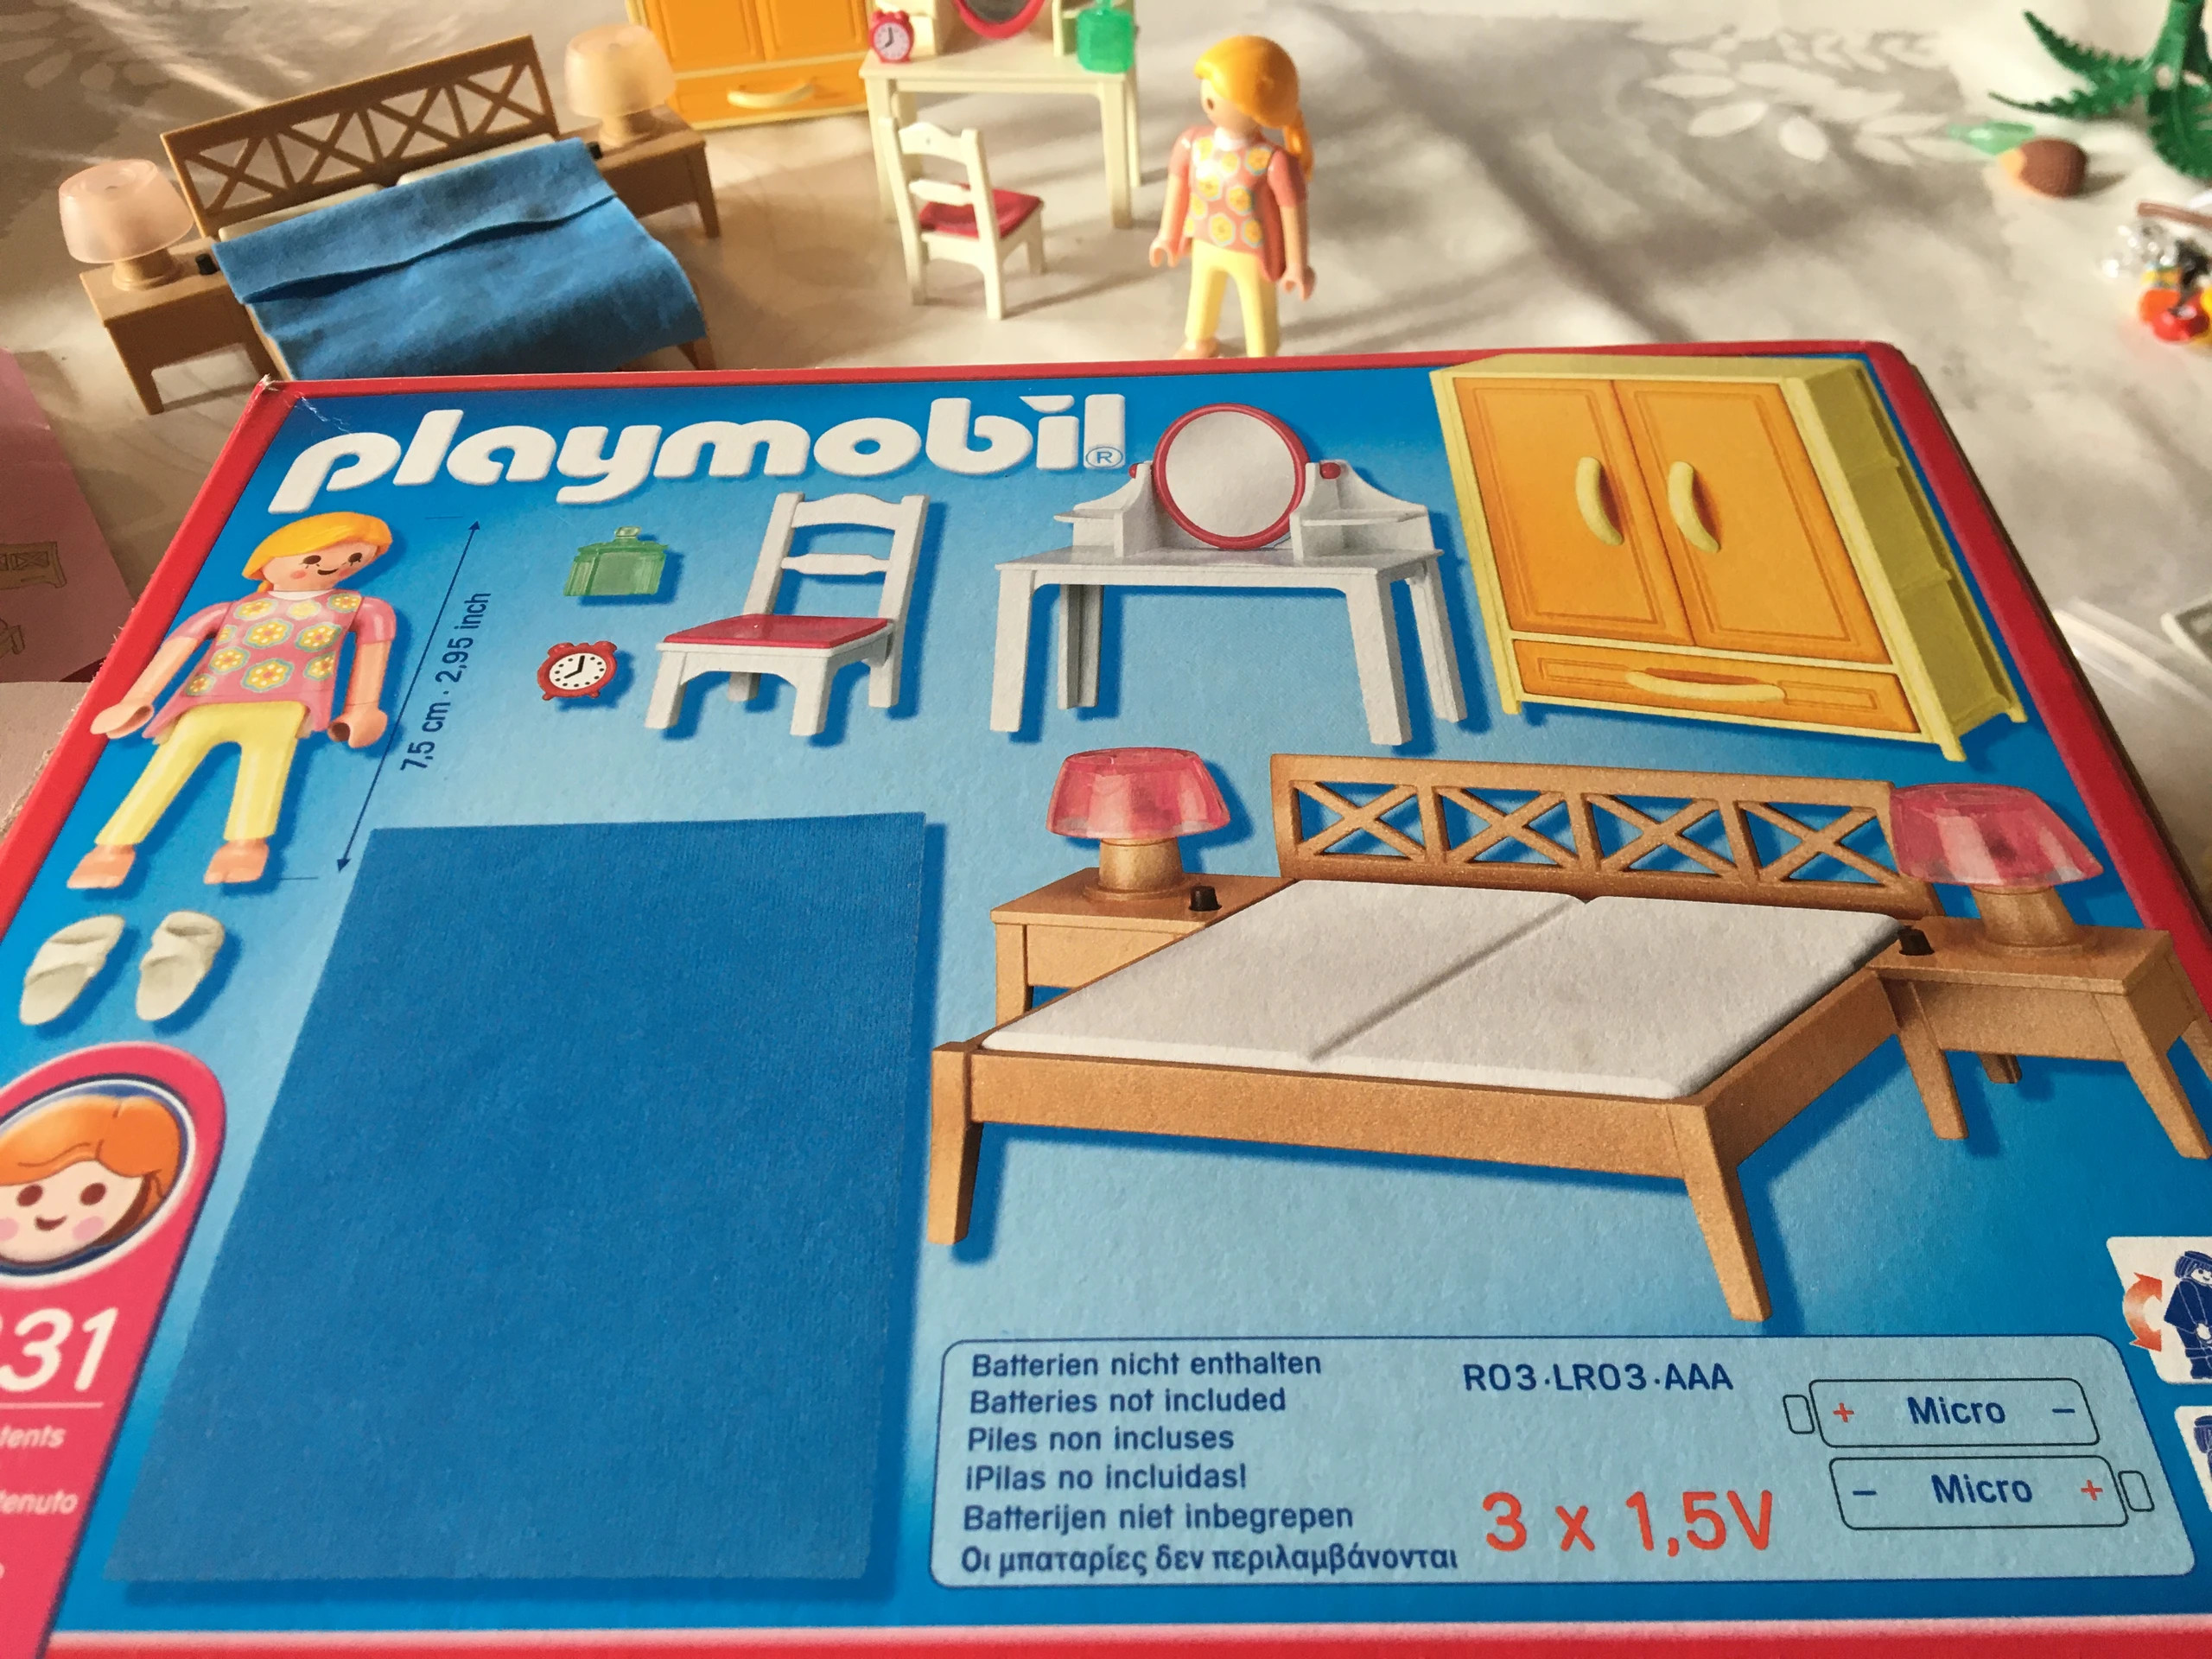 Playmobil - Chambre des parents avec coiffeuse